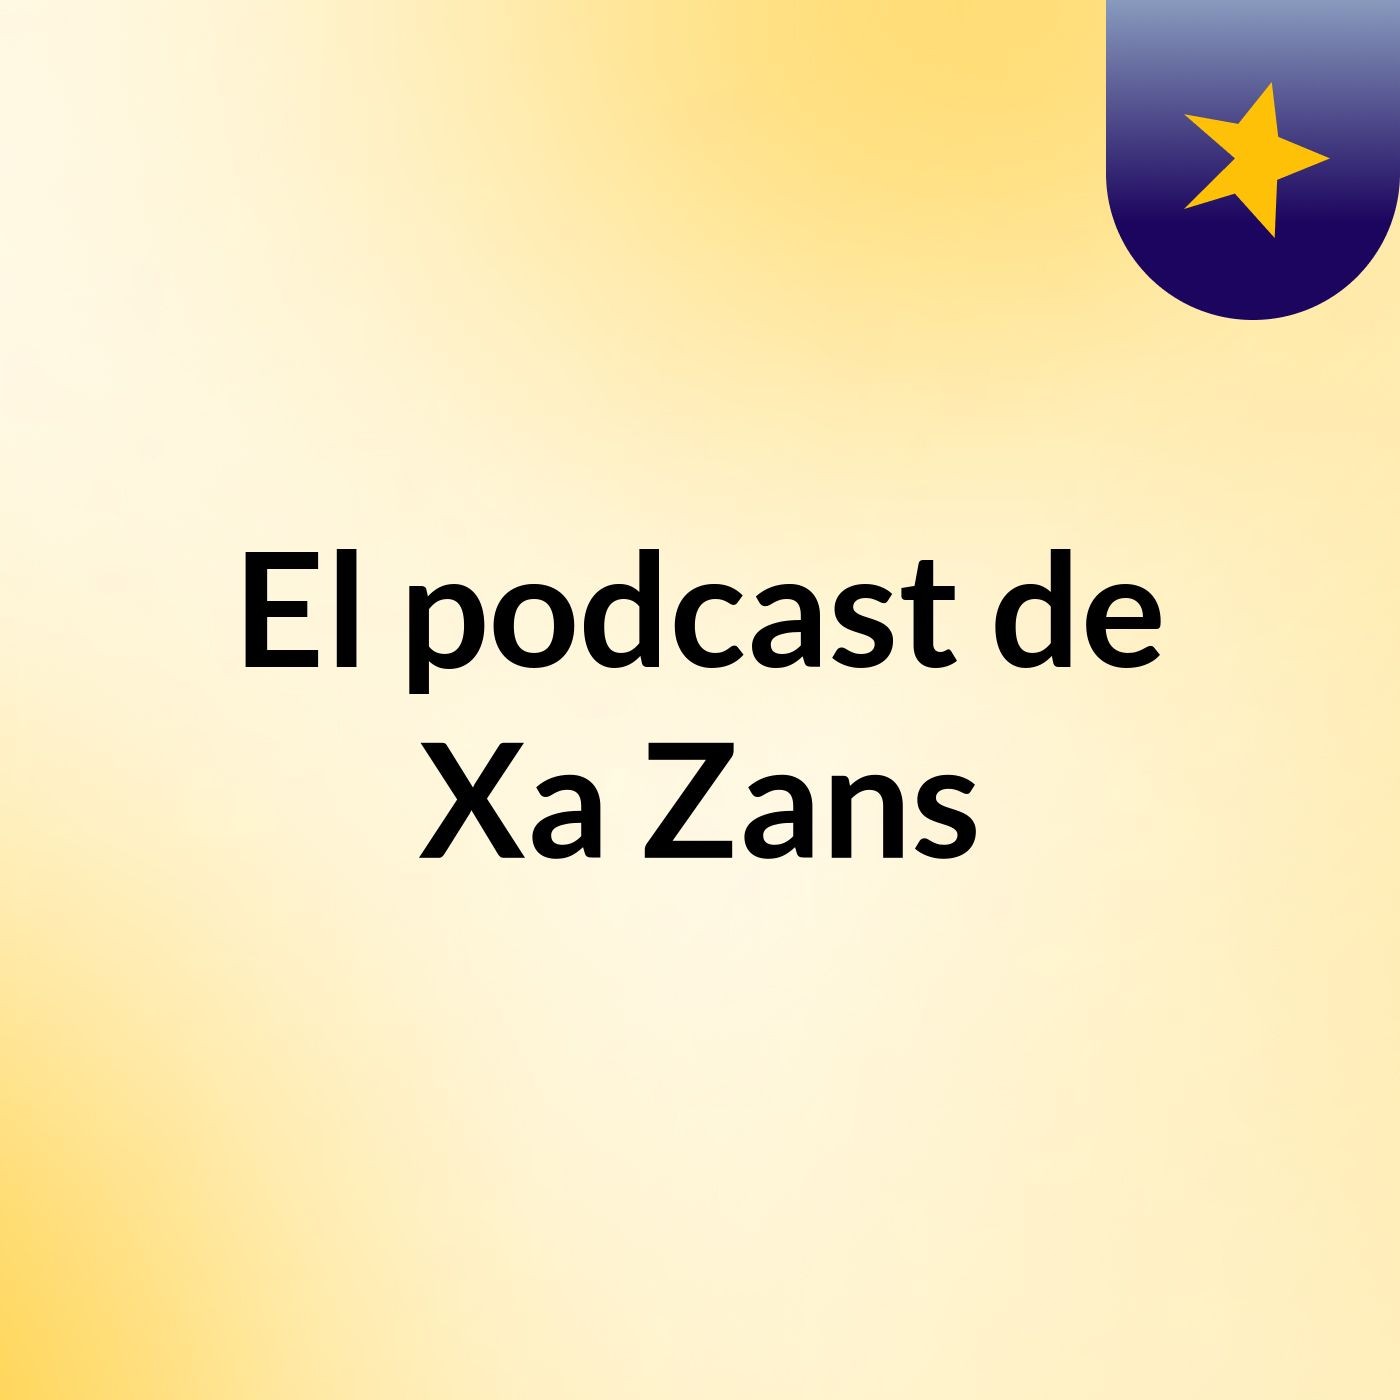 El podcast de Xa Zans